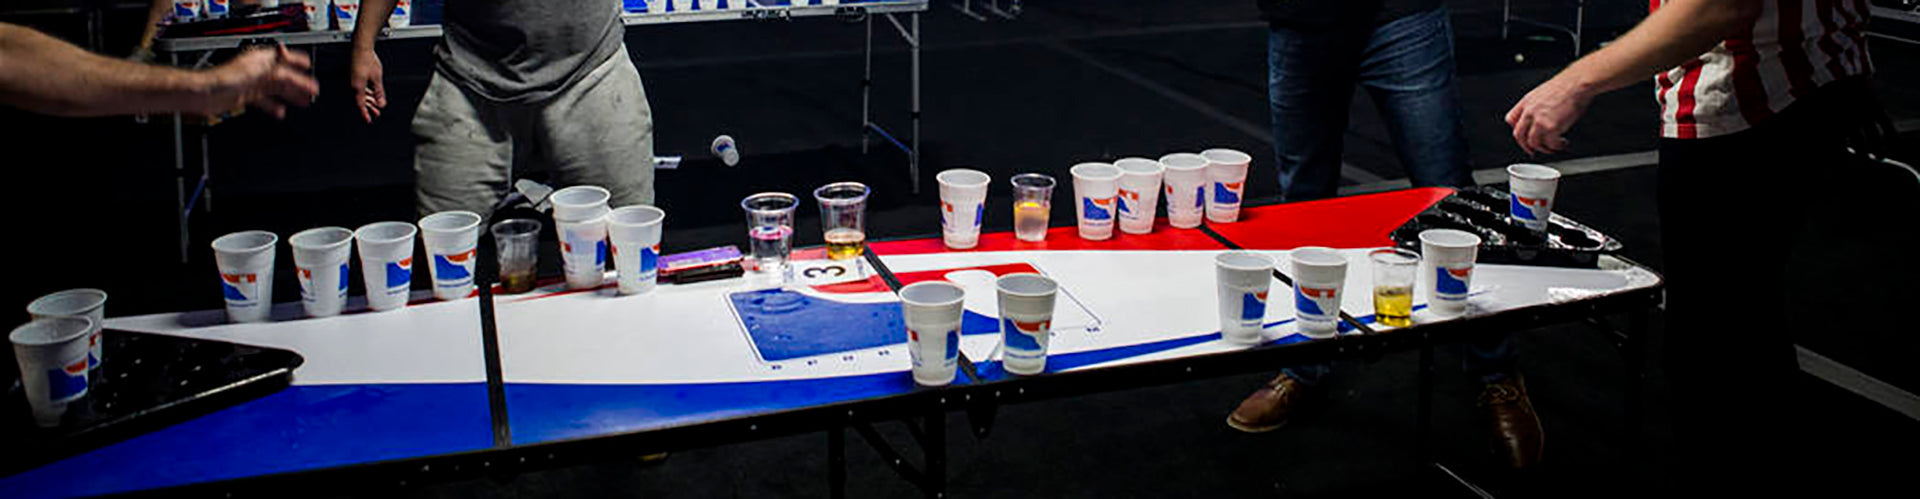 Besonders für den letzten Cup gibt es bei Beer Pong Turnieren ganz besondere Regeln